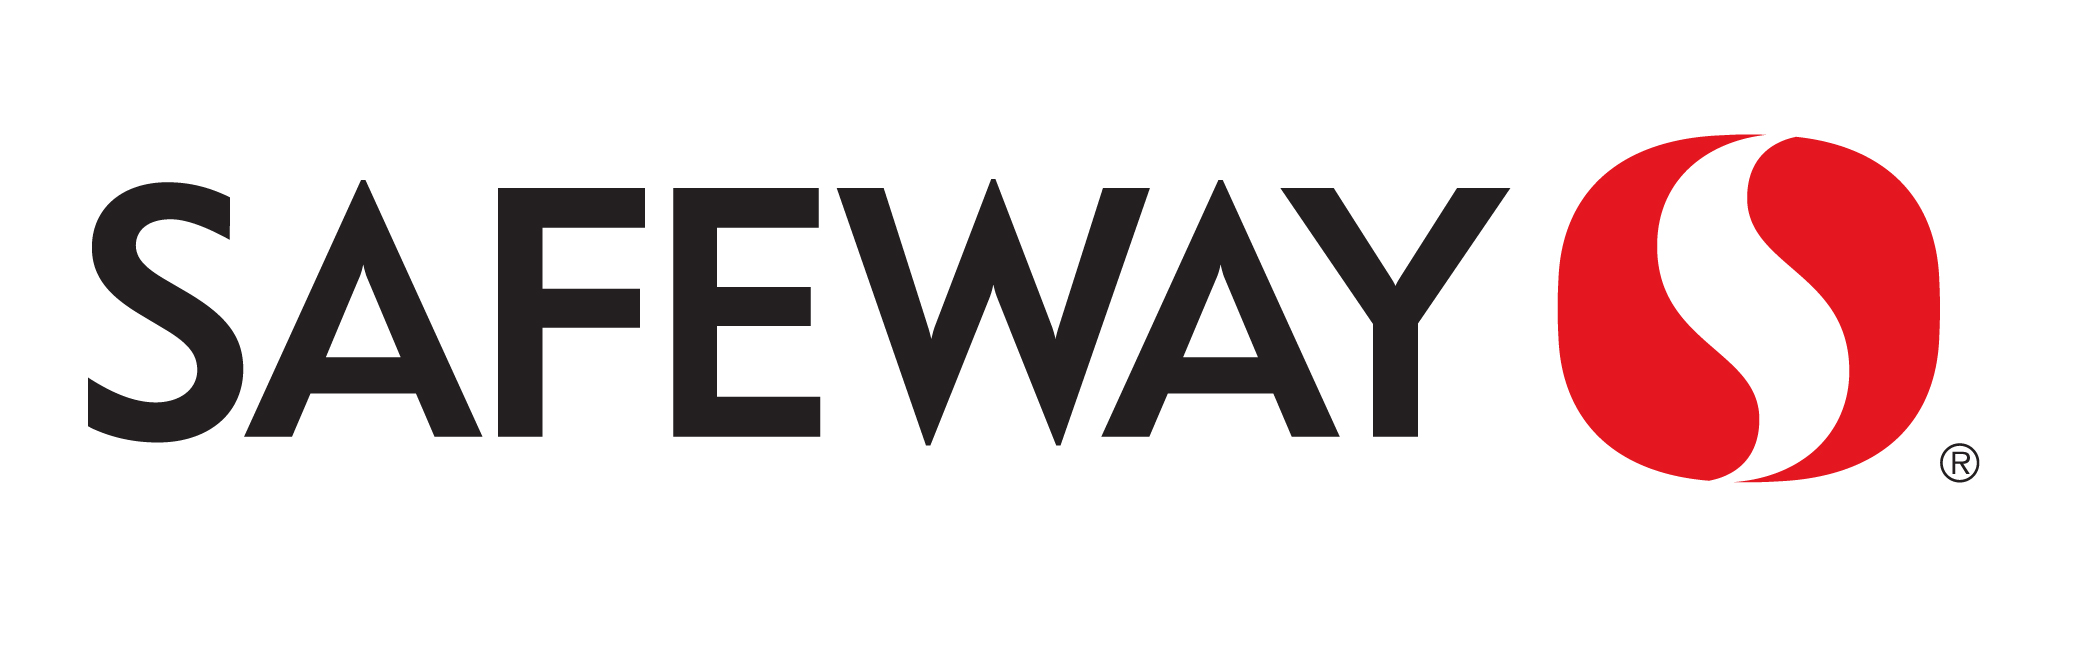 Safeway (Canada) Brand Logo